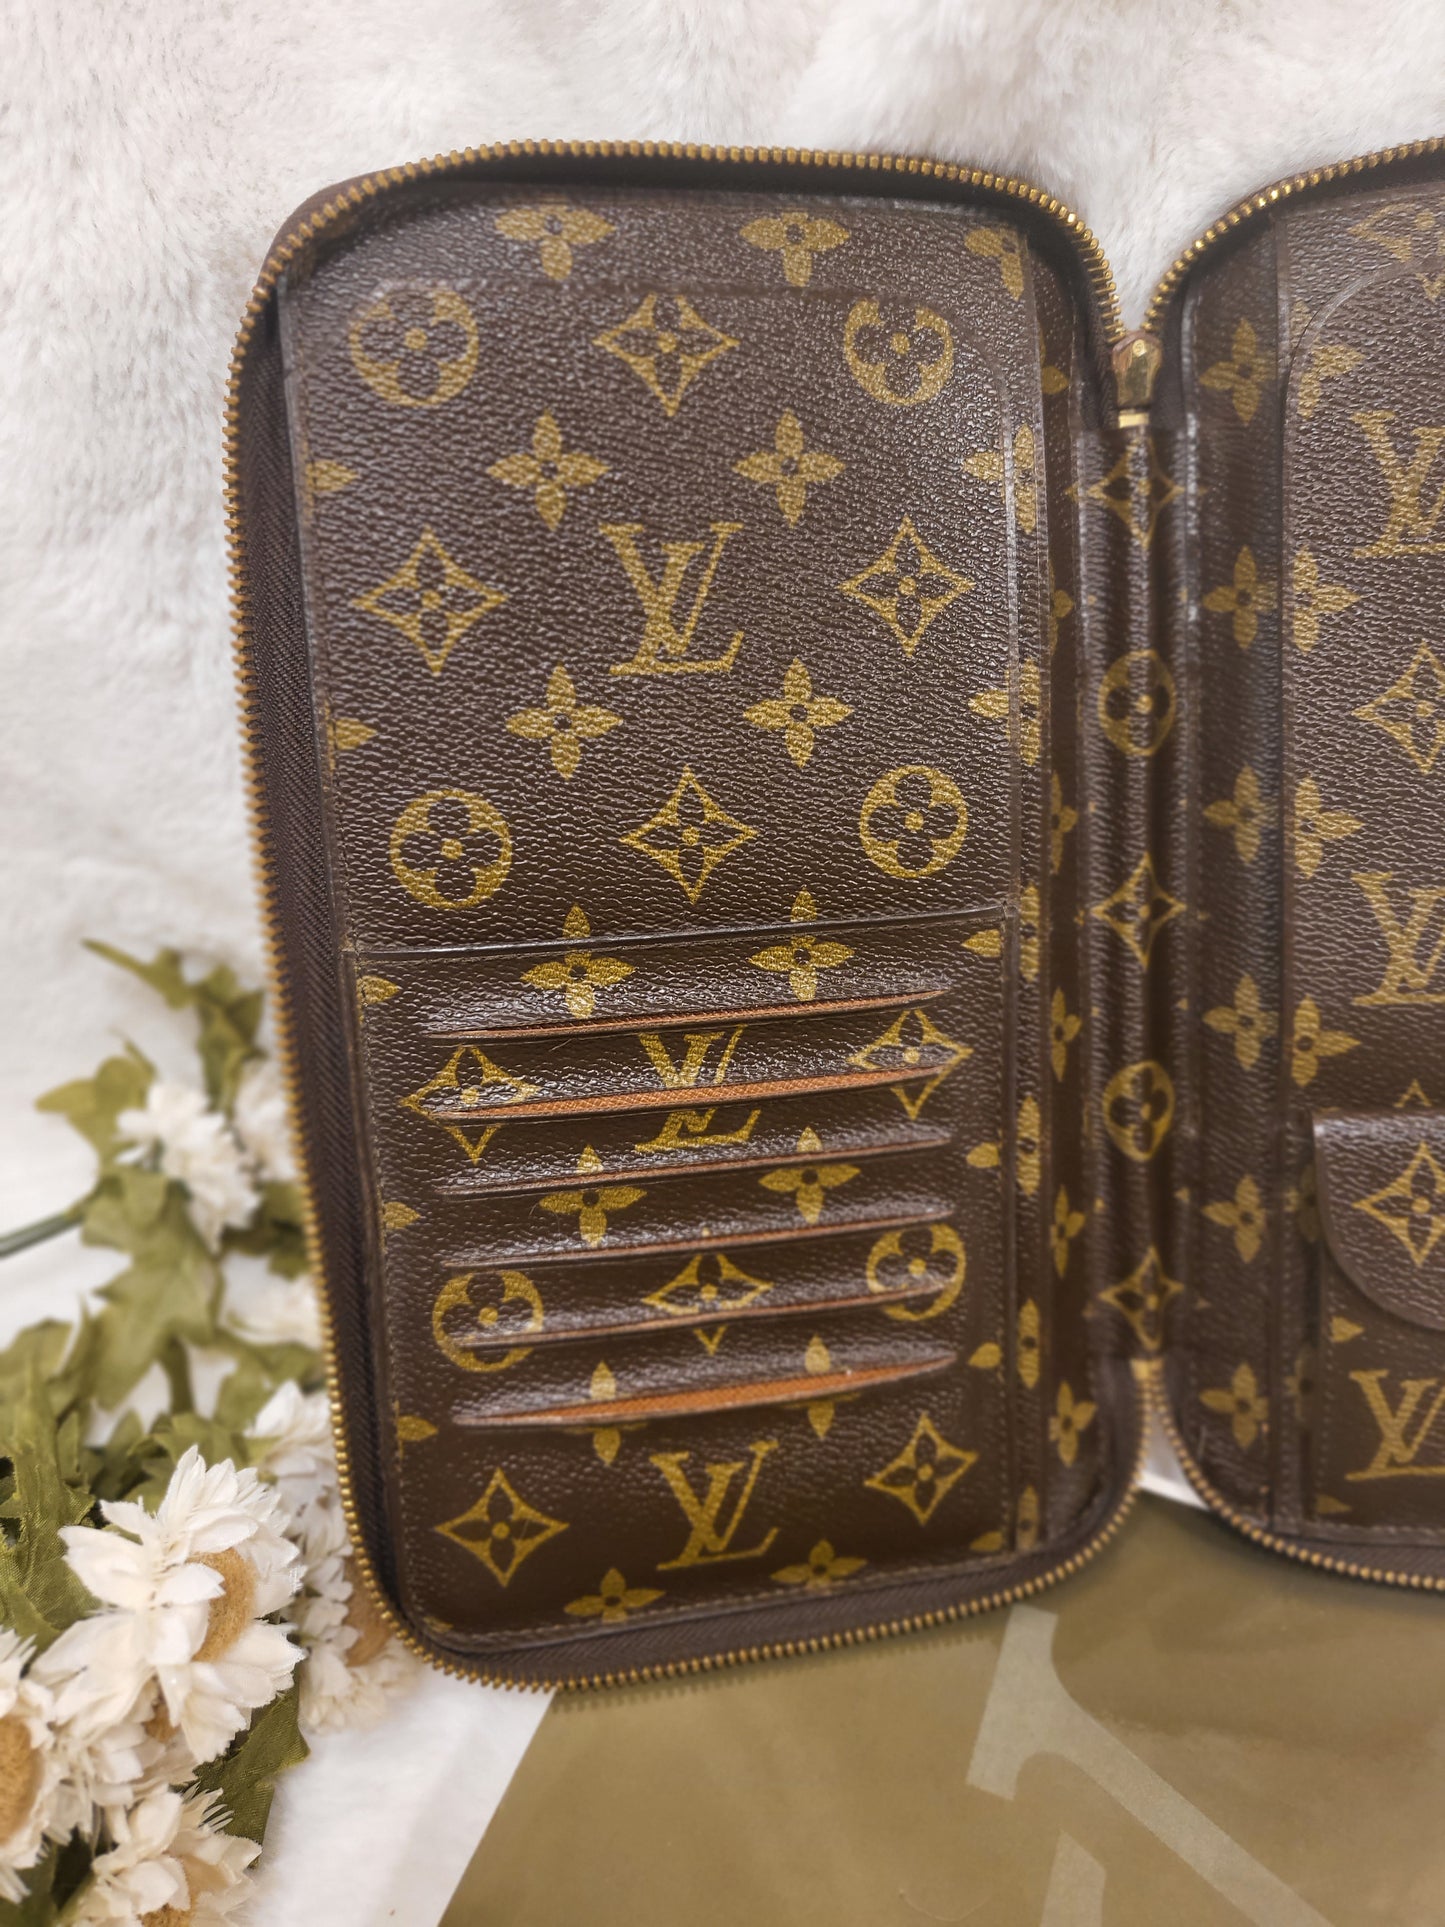 Authentic pre-owned Louis Vuitton de Voyage Travel organizer